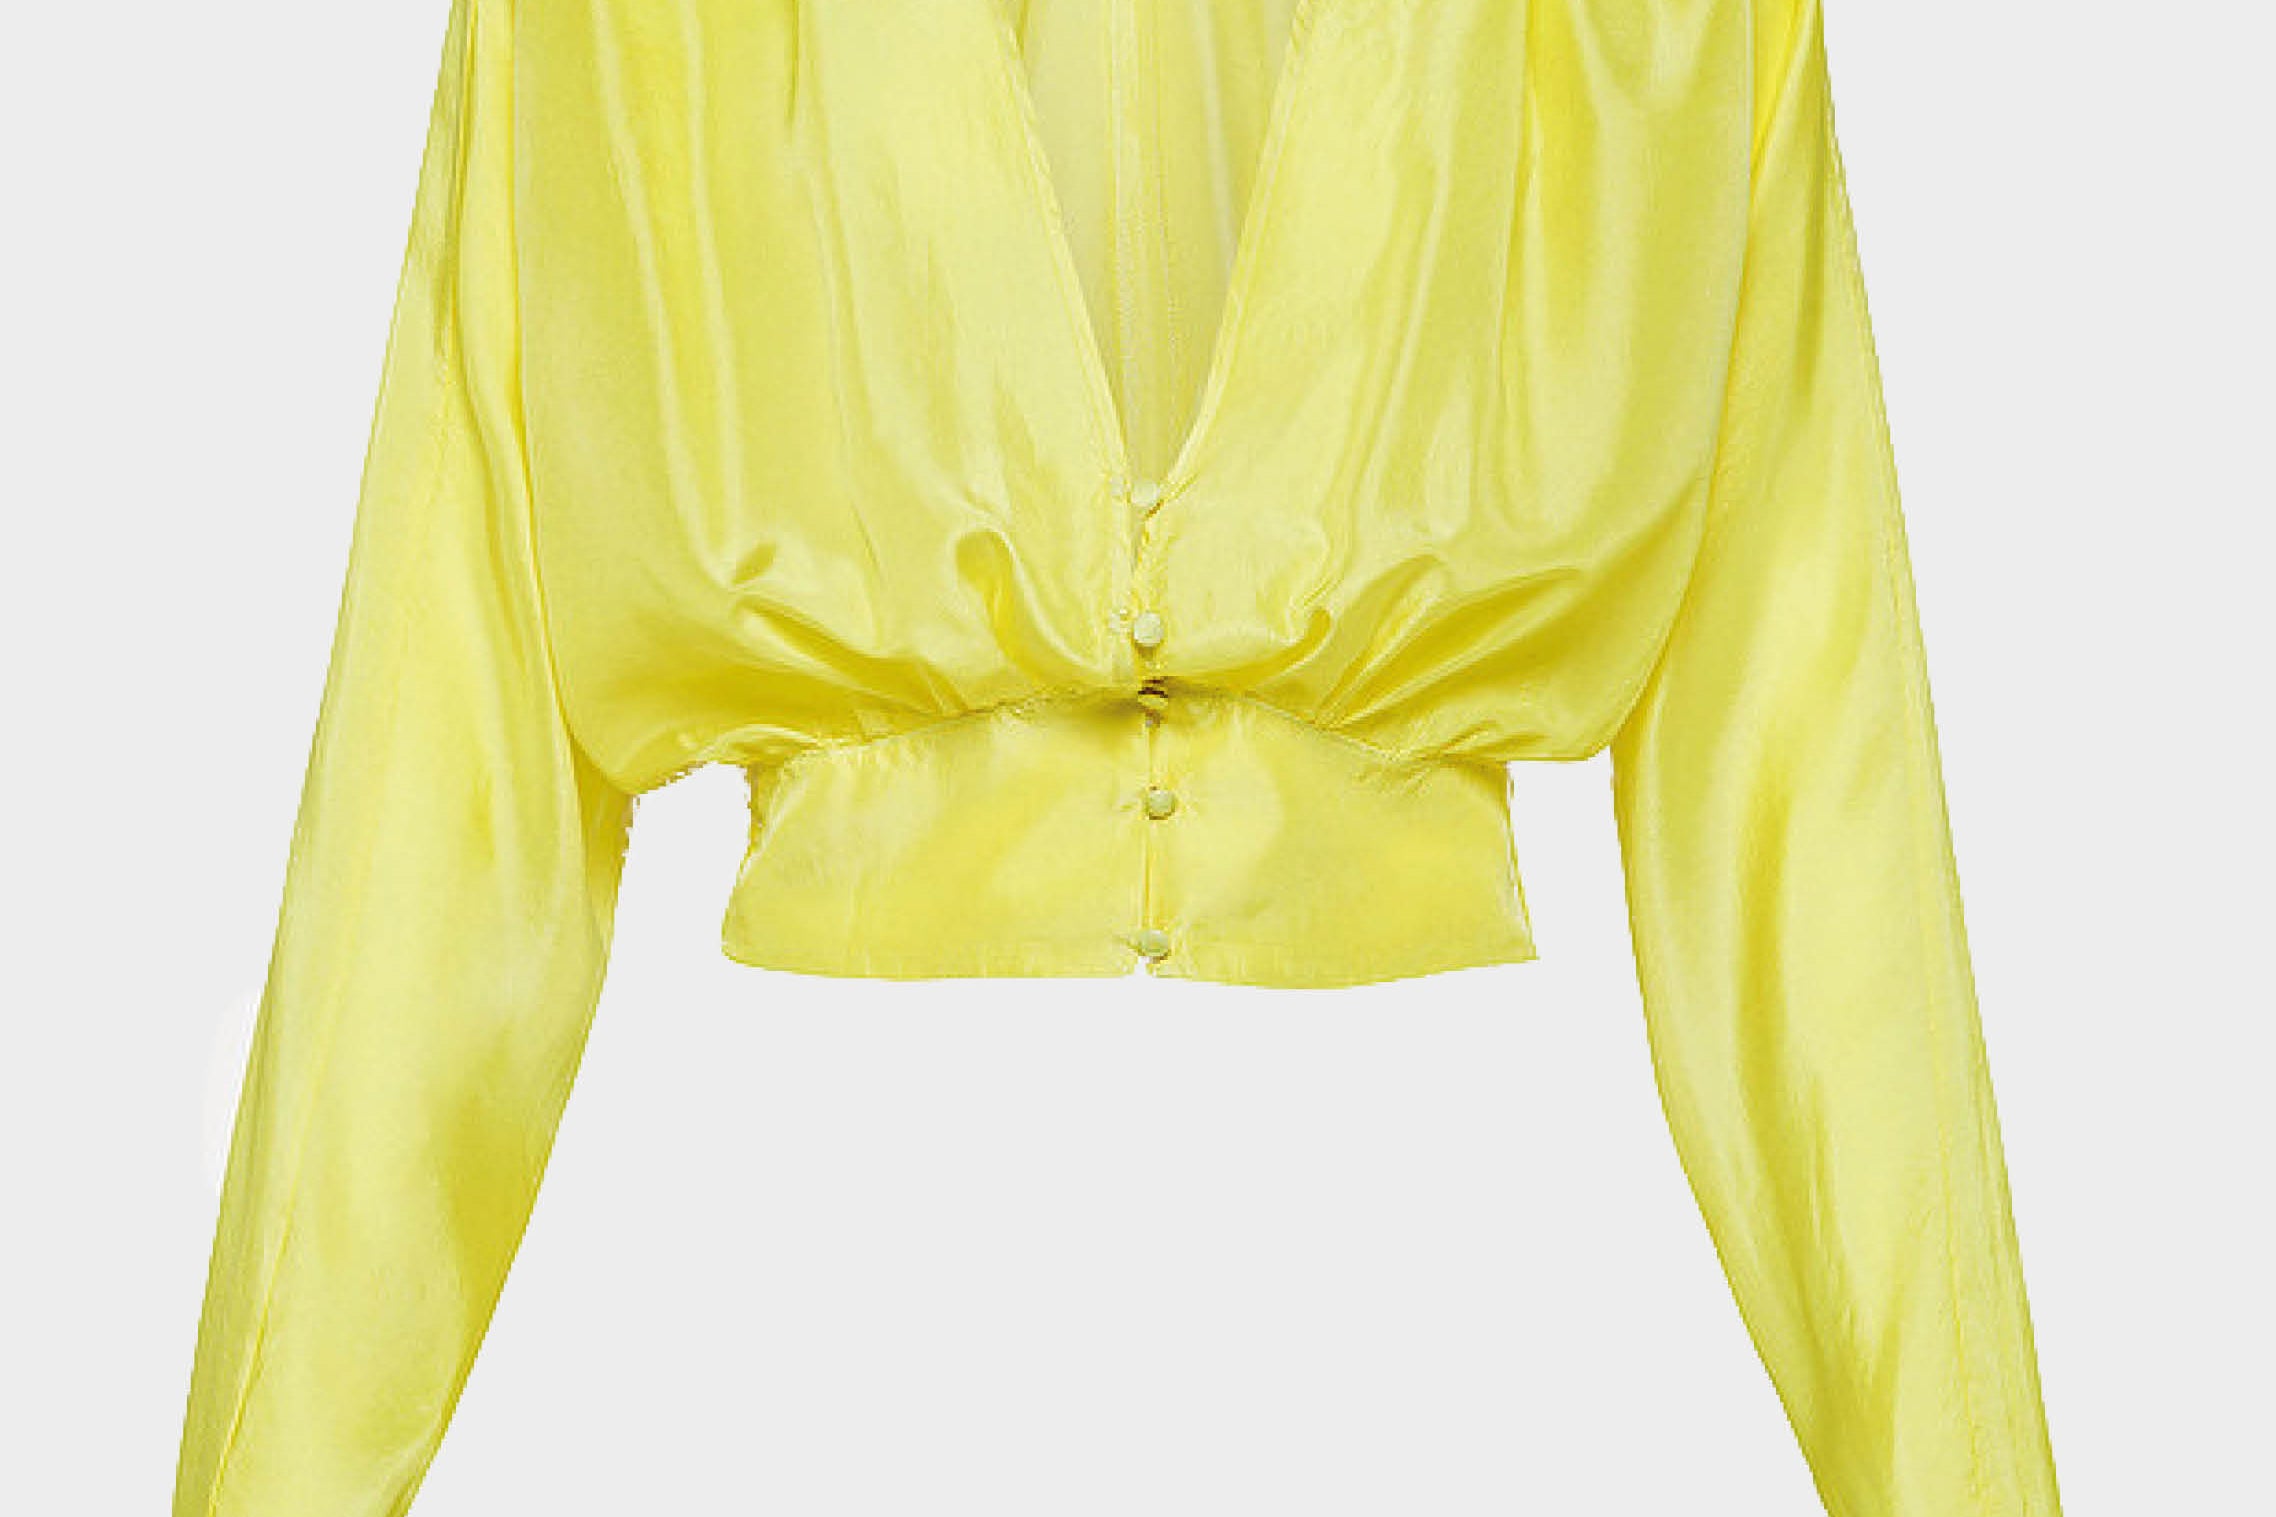 Camisa de seda Voile amarilla de la firma italiana Forte Forte. Escote en forma de V y cintura marcada. Botones en la parte delantera. Envíos gratuitos a partir de 200€. Devoluciones fáciles.